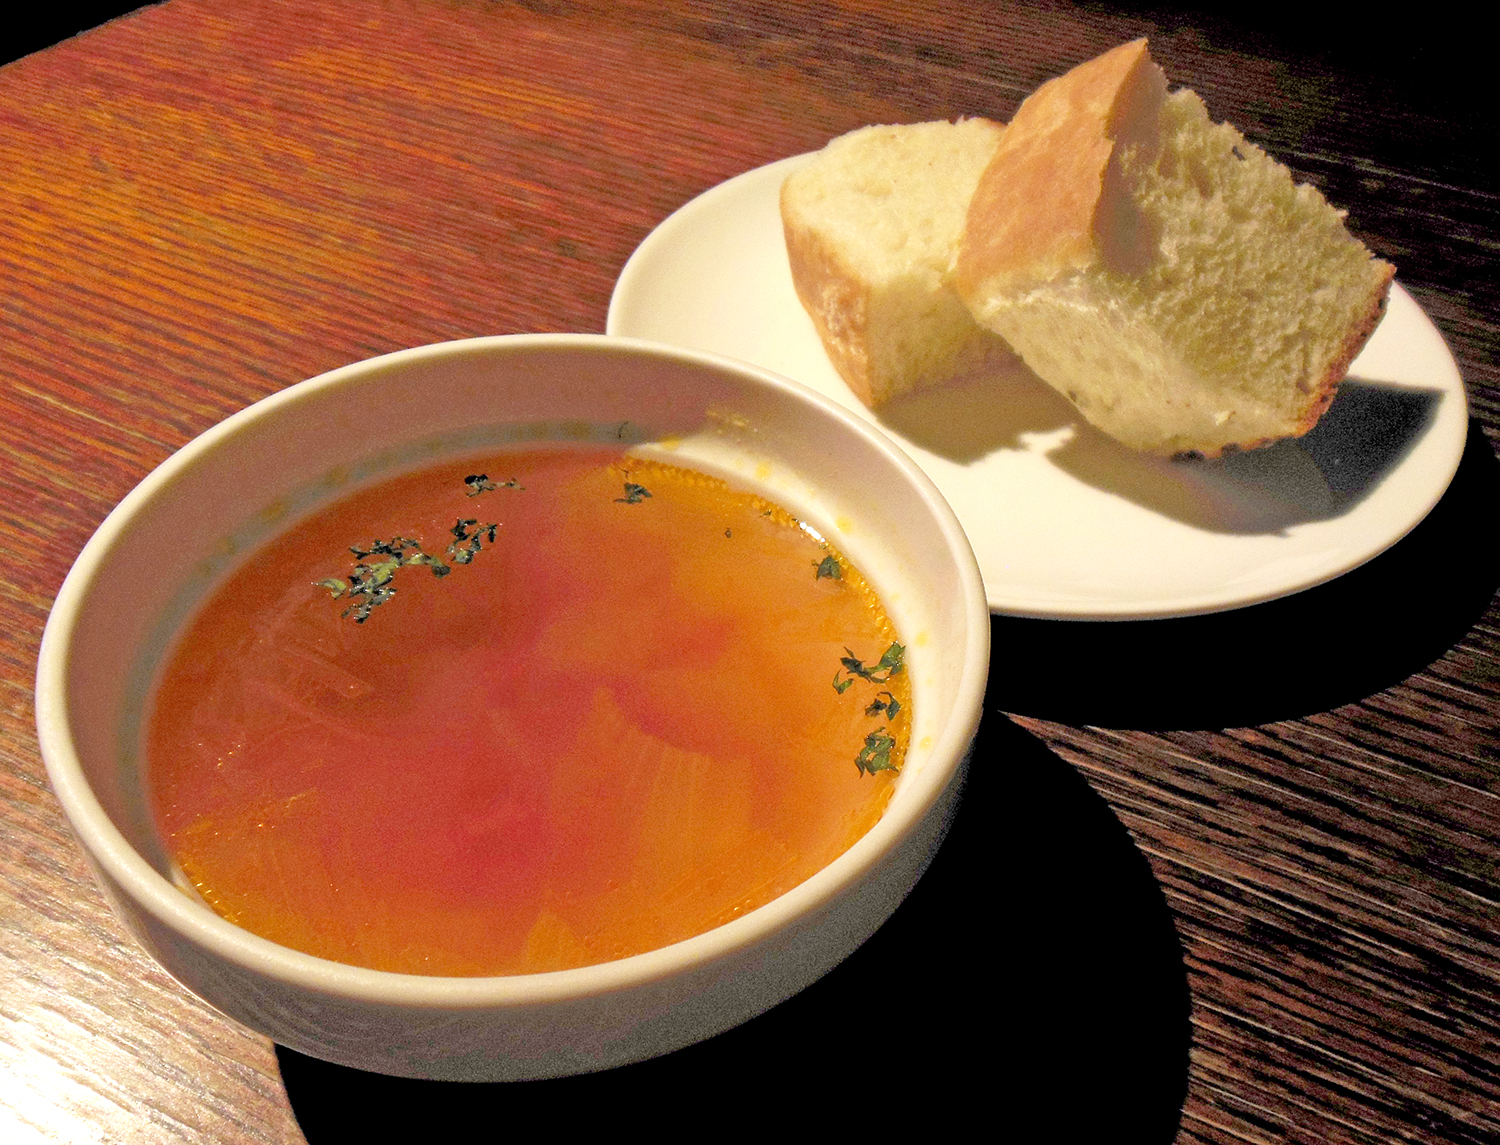 セットのランチスープは、大根入りのミネストローネ。具材にスープがしみしみで旨し。